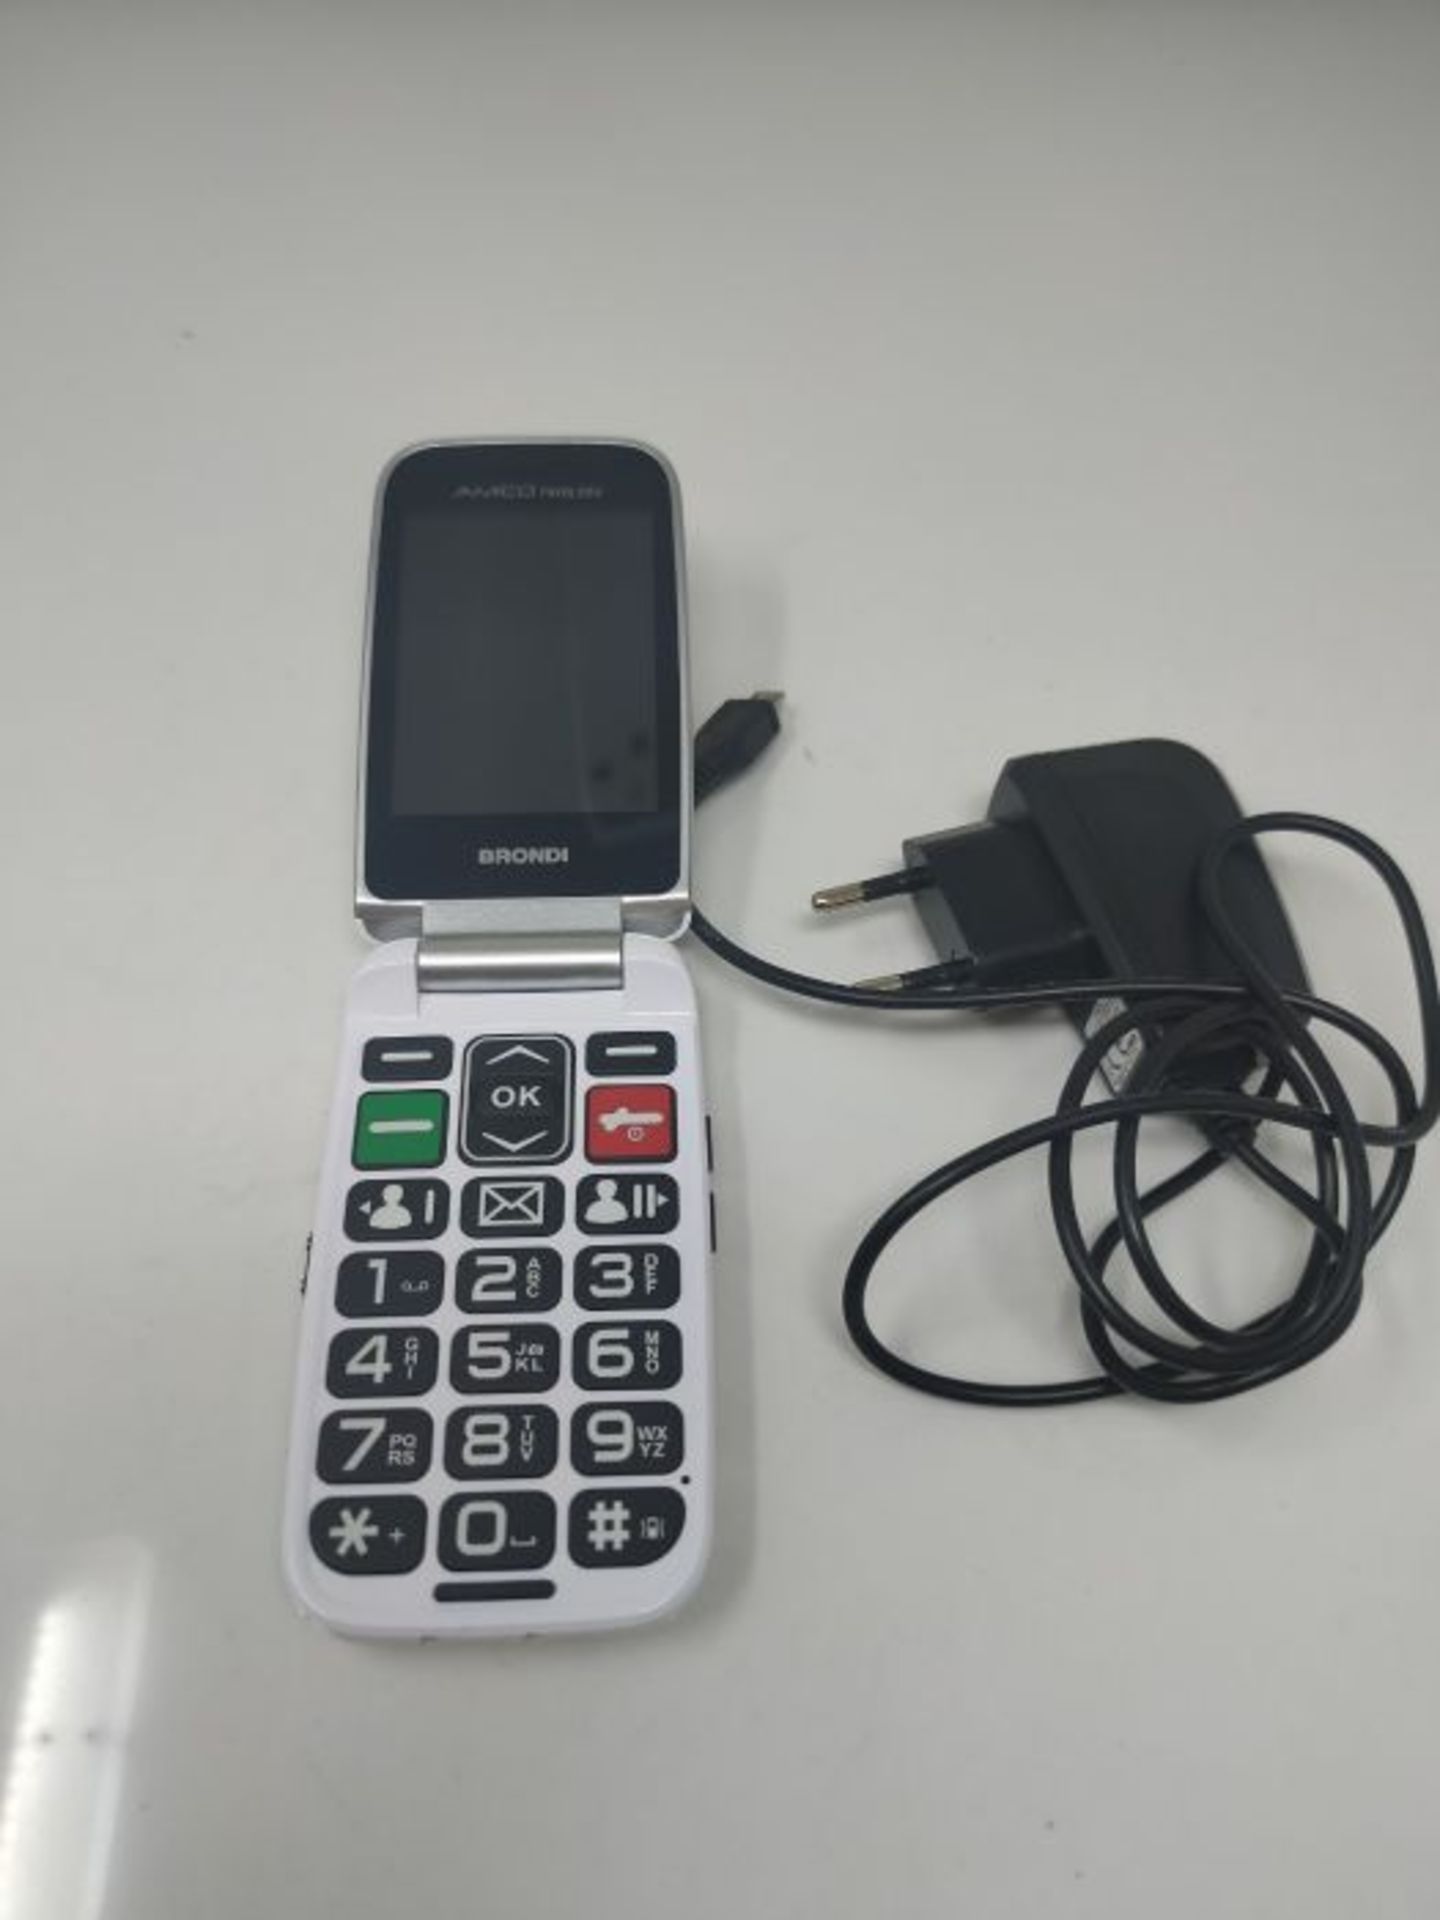 RRP £65.00 Brondi Amico Favoloso, Telefono cellulare GSM per anziani con tasti grandi, tasto SOS - Image 2 of 2